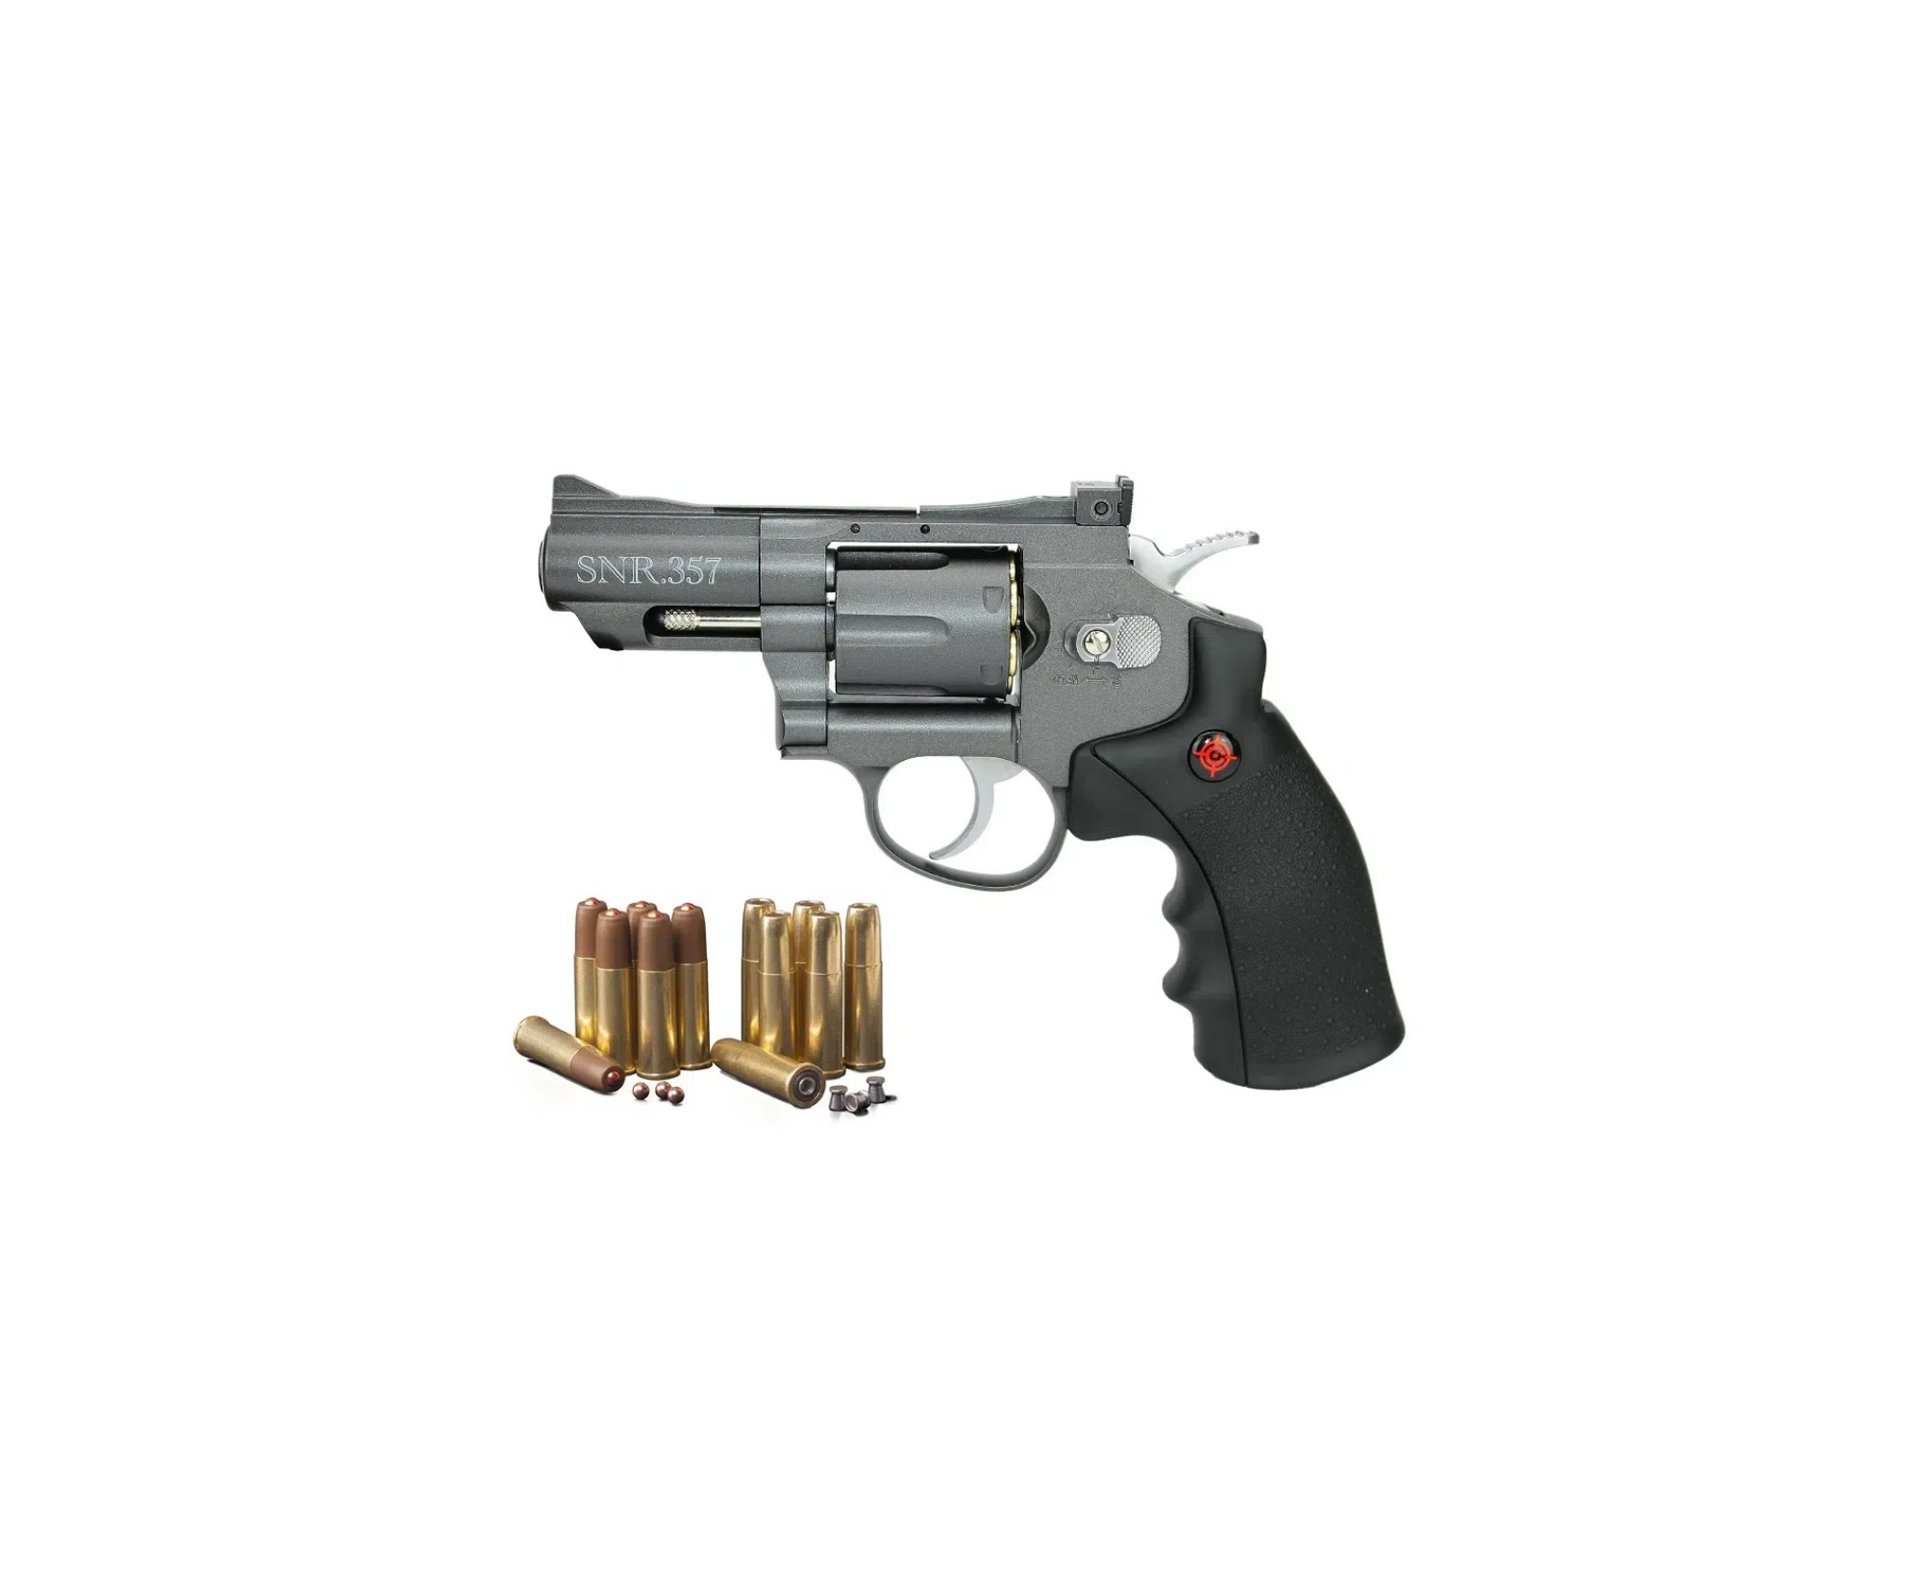 Revolver Co2 Full Metal 2" Cano Snr357 Cal 4,5mm Crosman + Munição + Co2 + Alvos